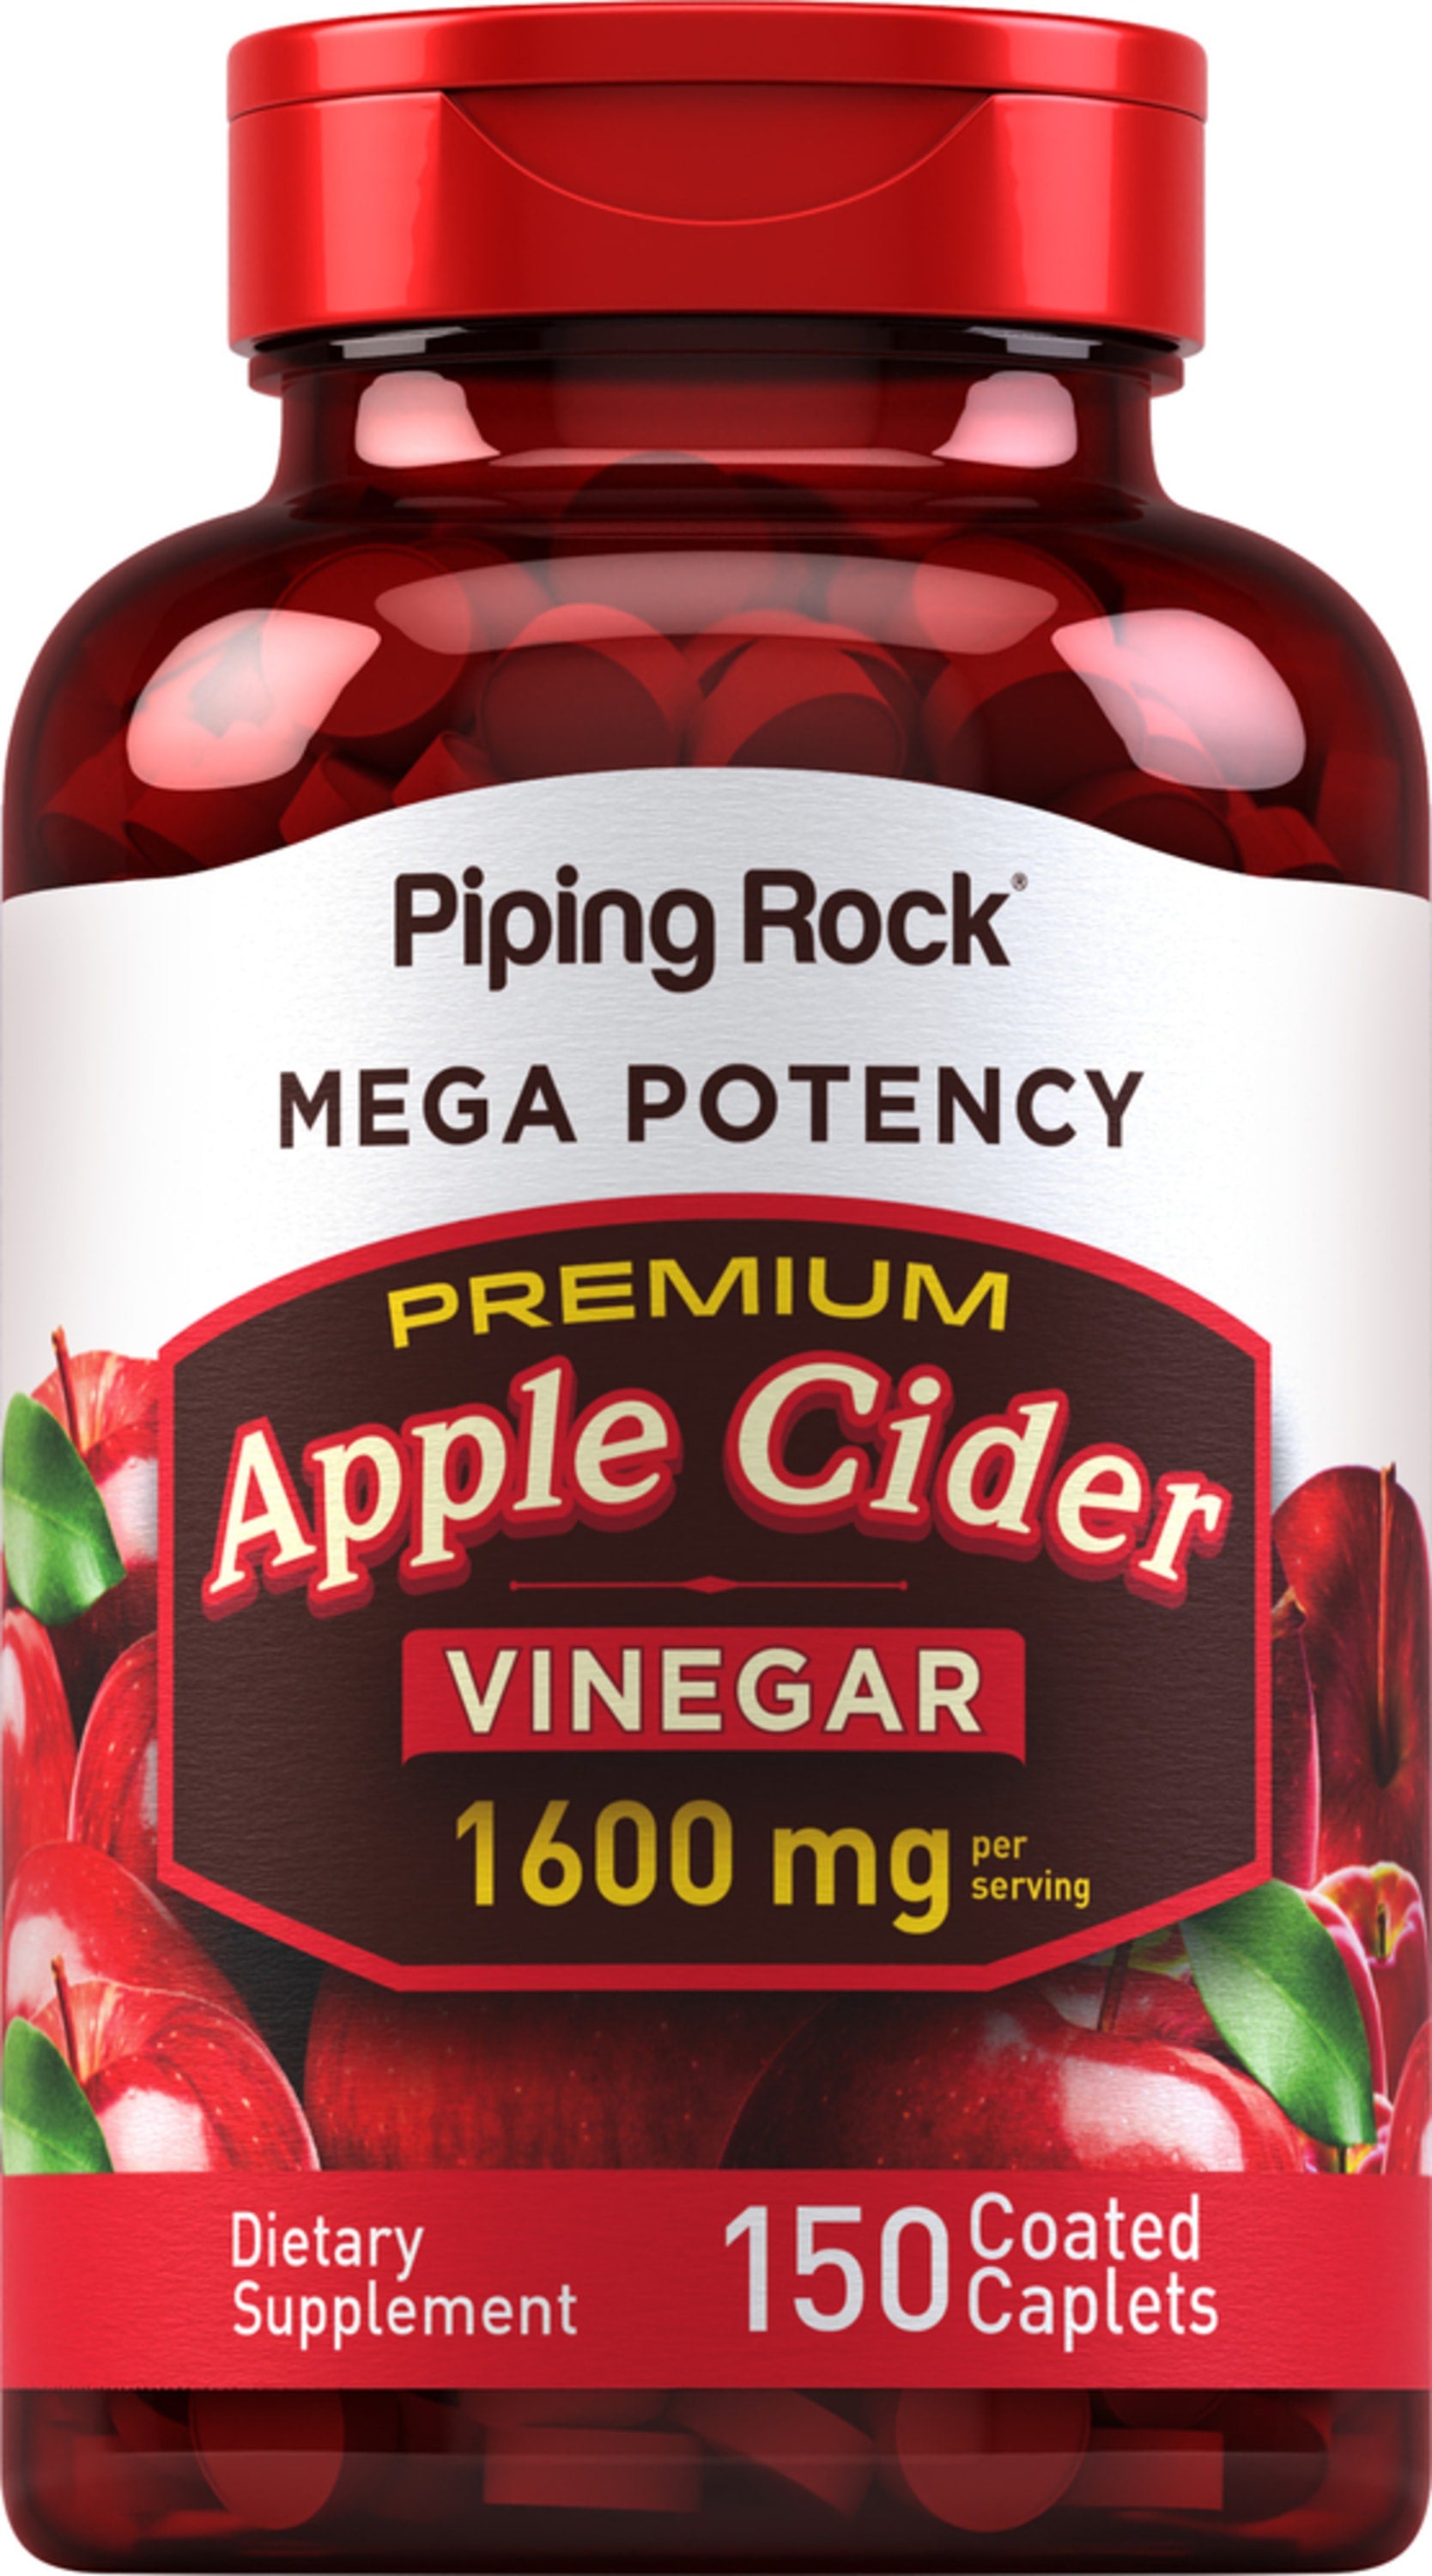 Mega Potency Apple Cider Vinegar, 1600 mg (per serving), 150 Coated Caplets